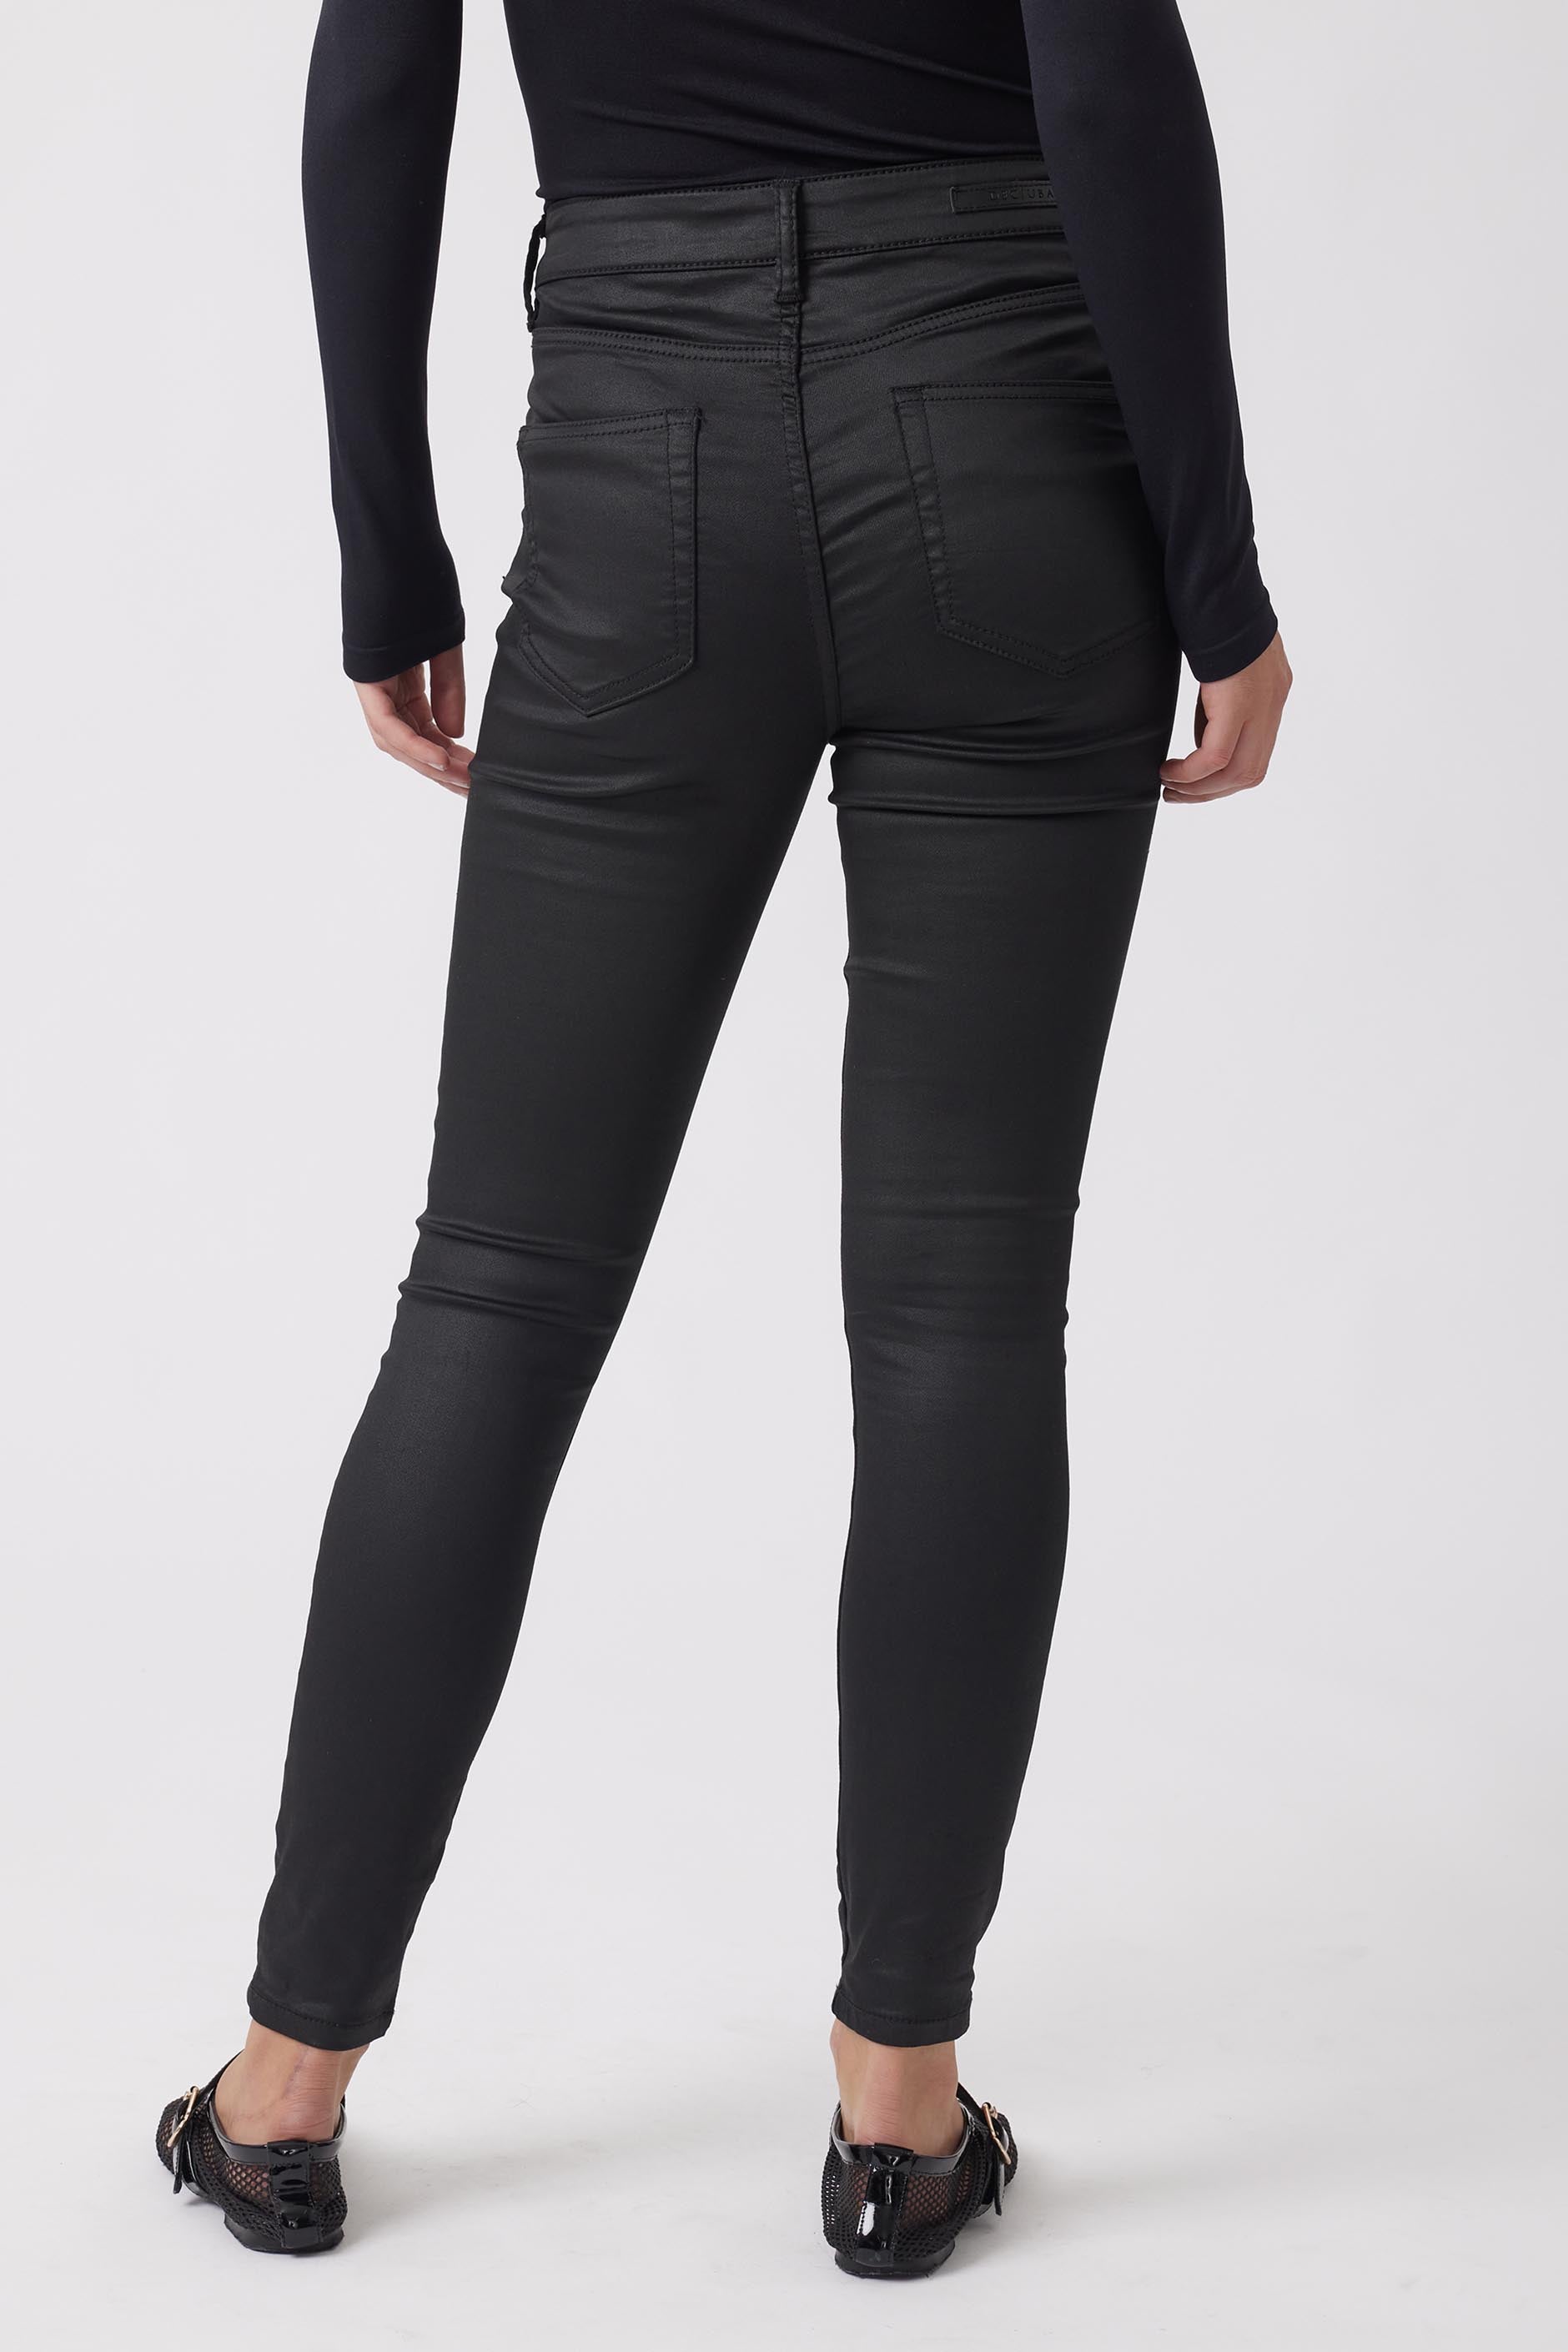 Riley 5 Pocket Skinny Jean — COATED BLACK